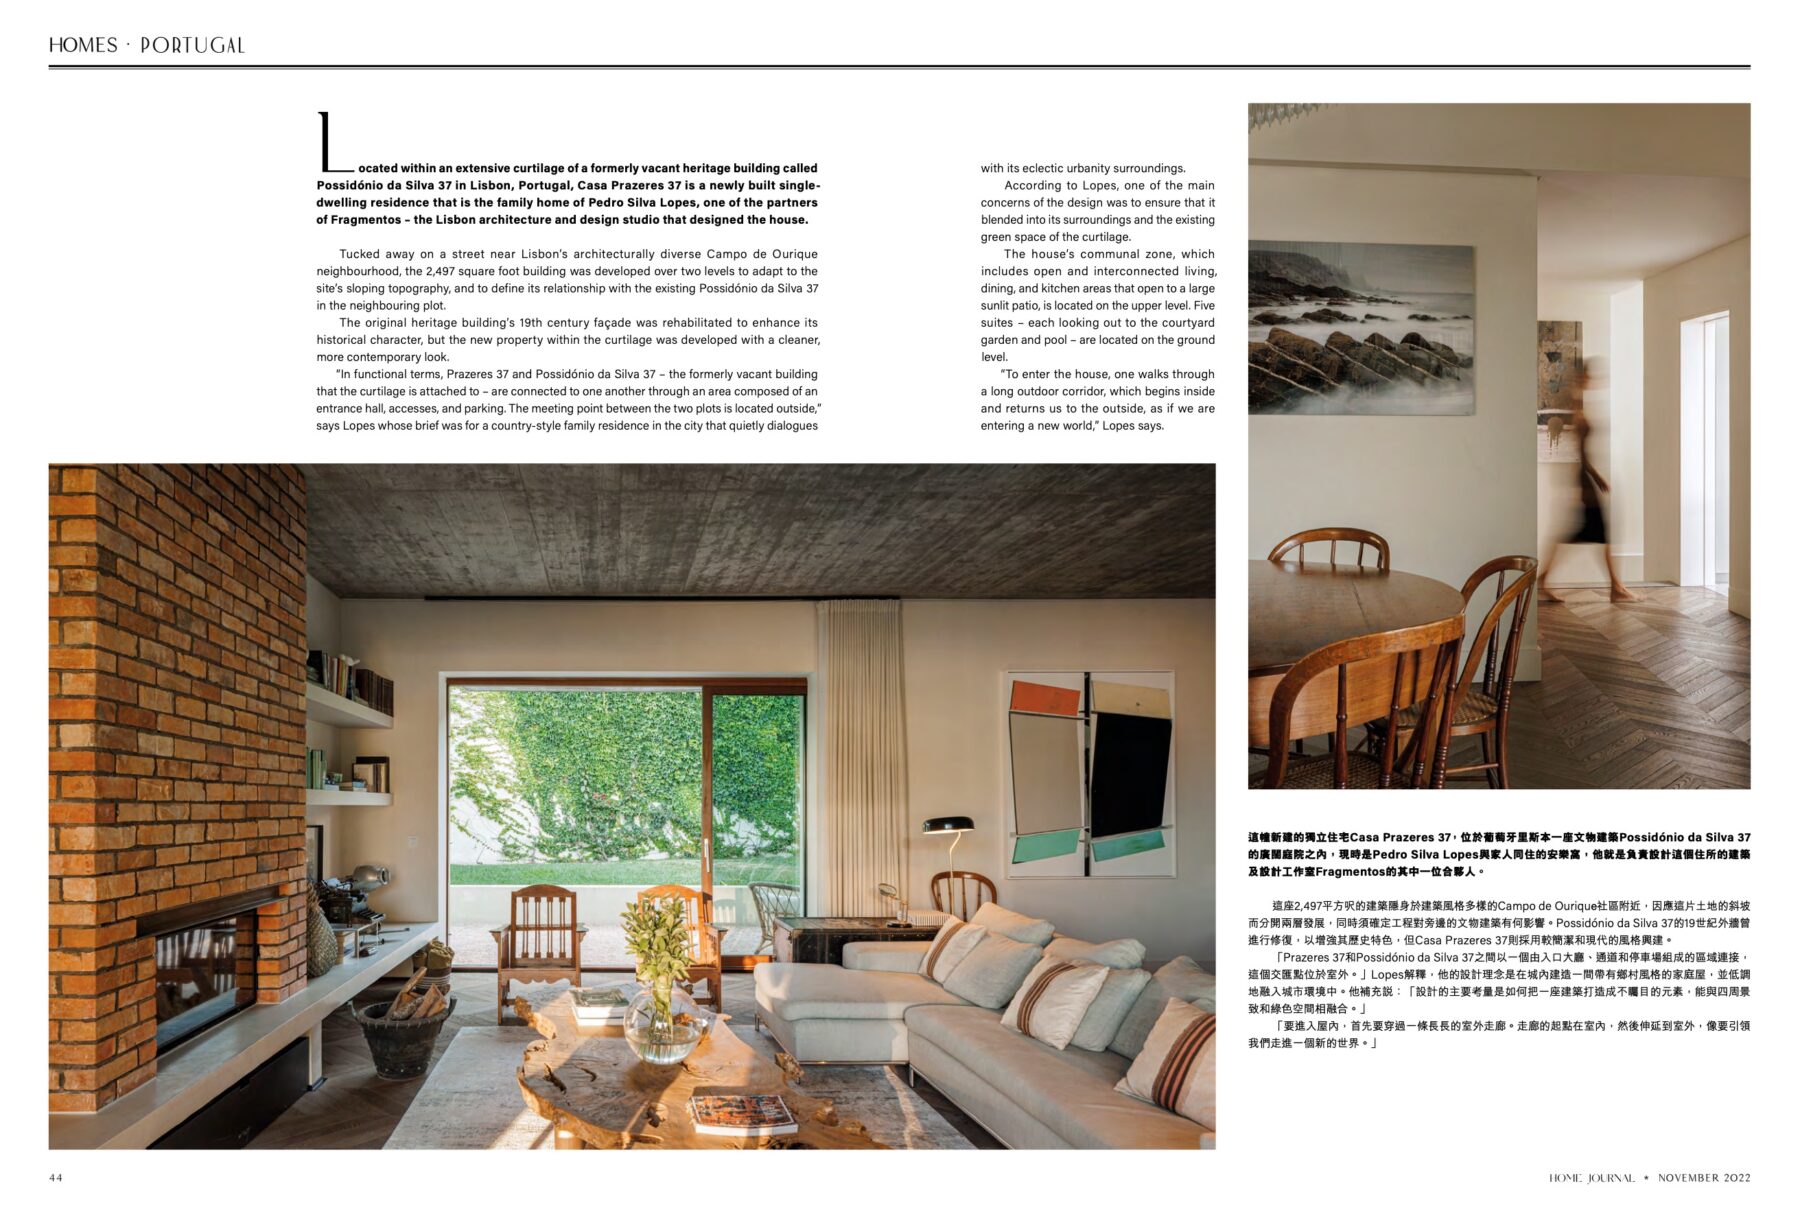 Home Journal Nov 2022 do atelier Fragmentos com fotografia arquitetura de ivo tavares studio - architectural photography